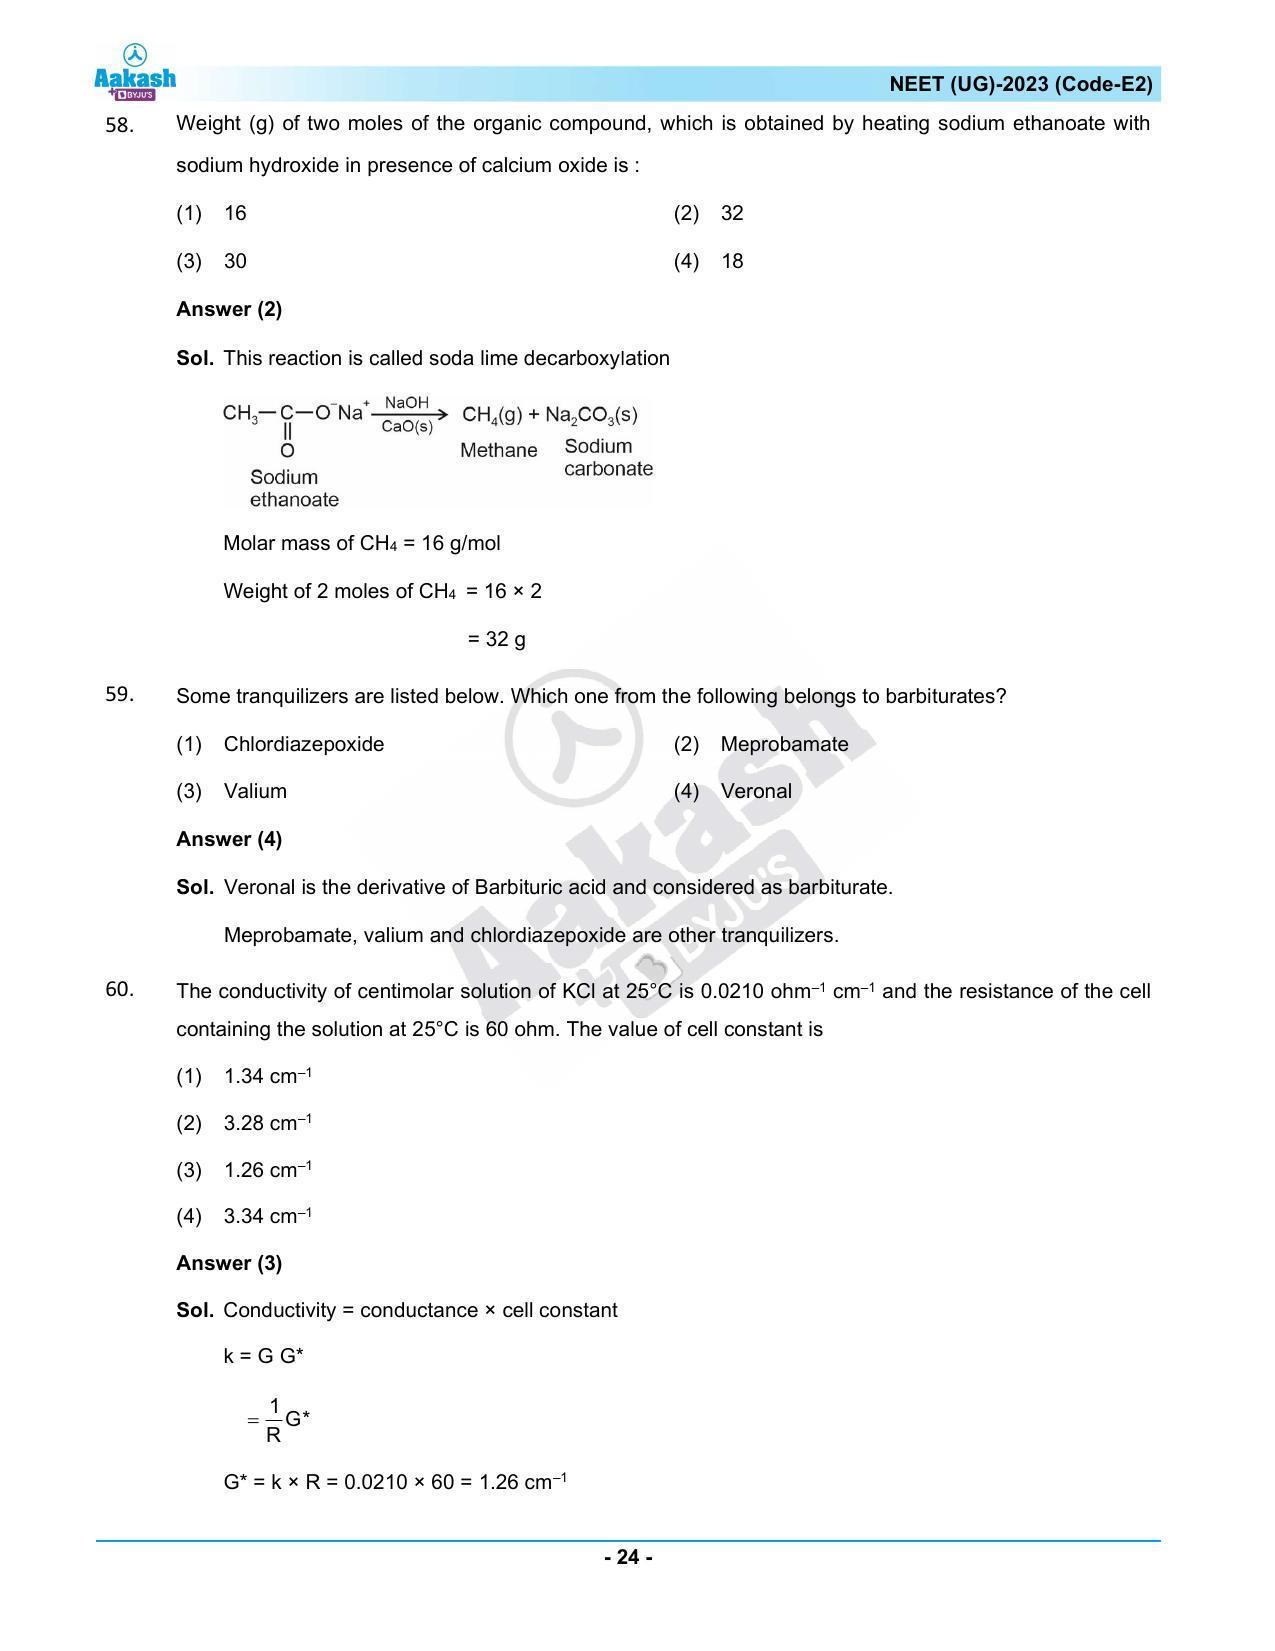 NEET 2023 Question Paper E2 - Page 24